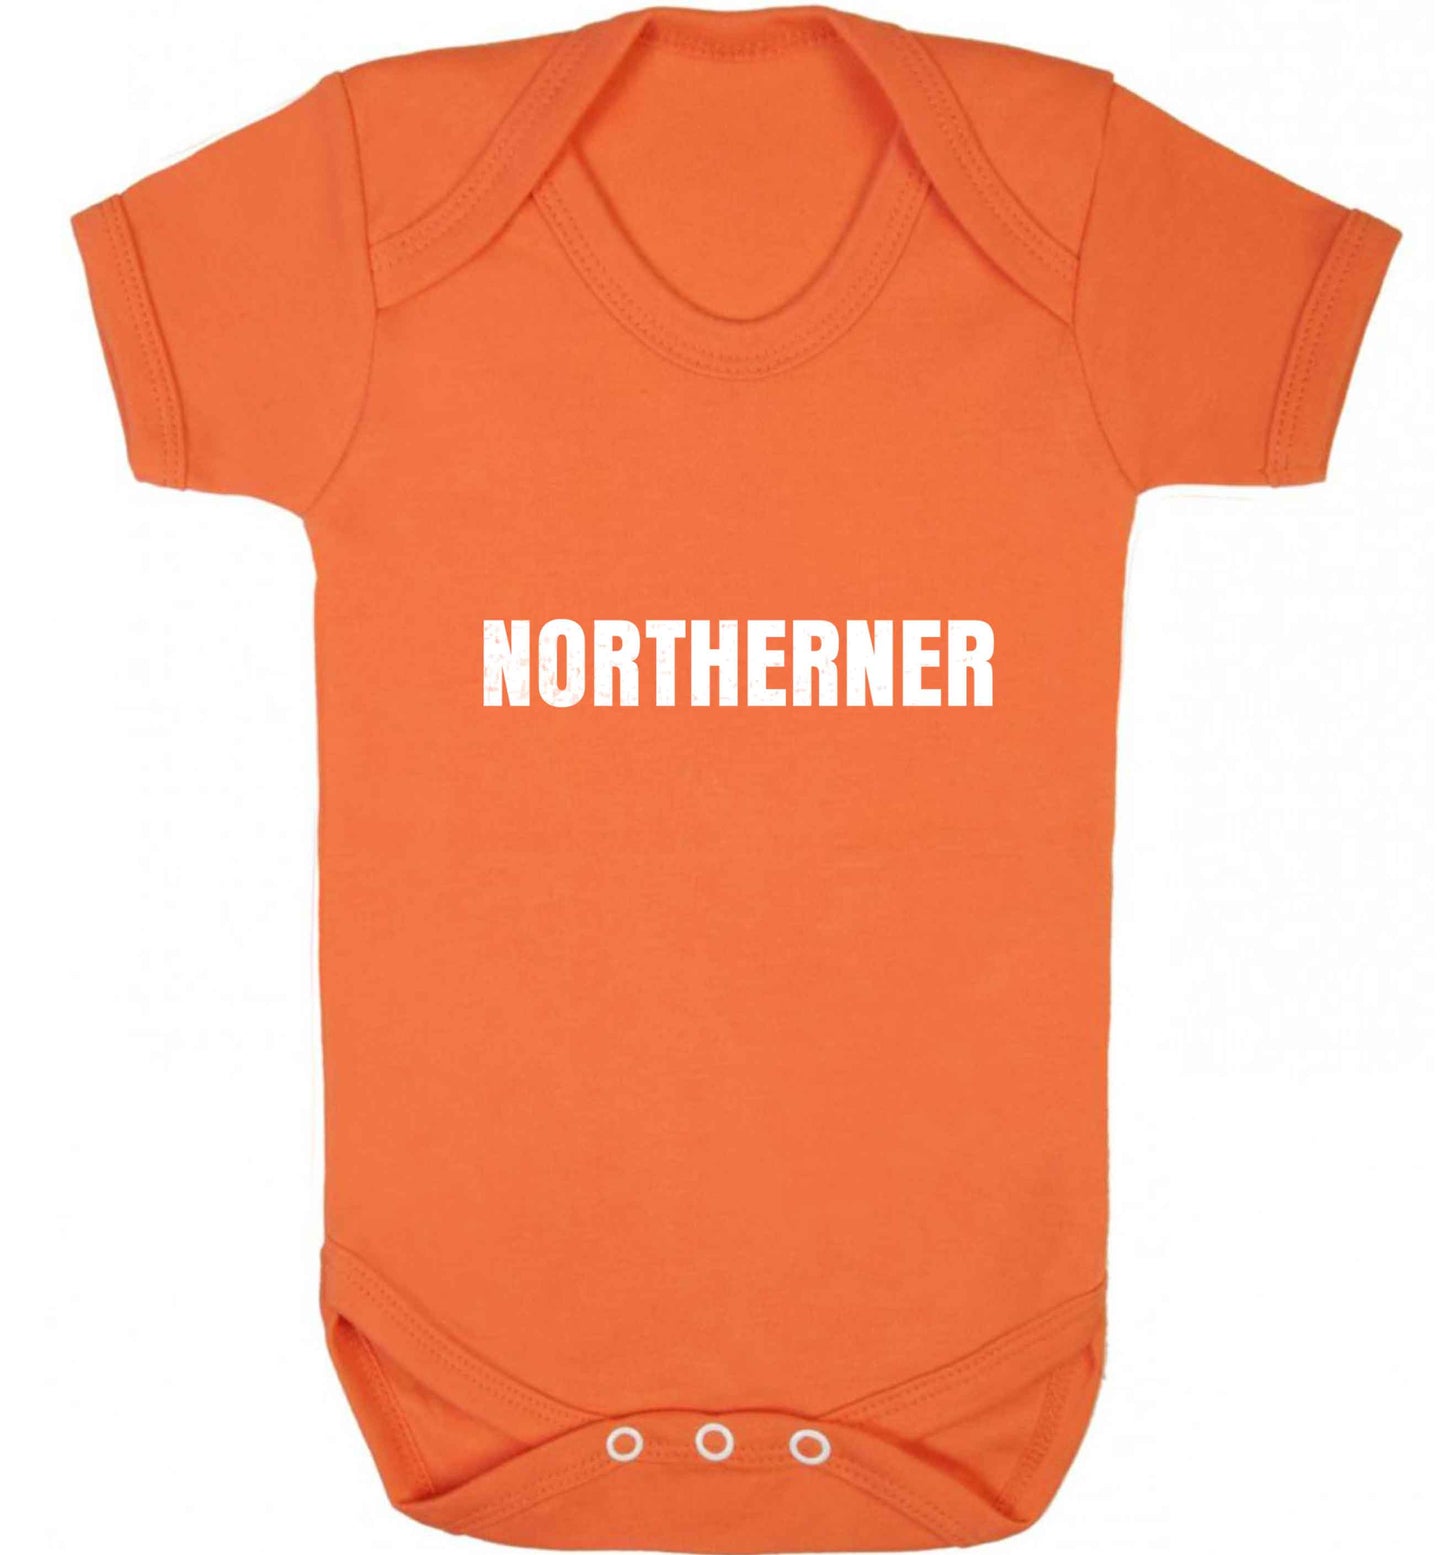 Northerner baby vest orange 18-24 months